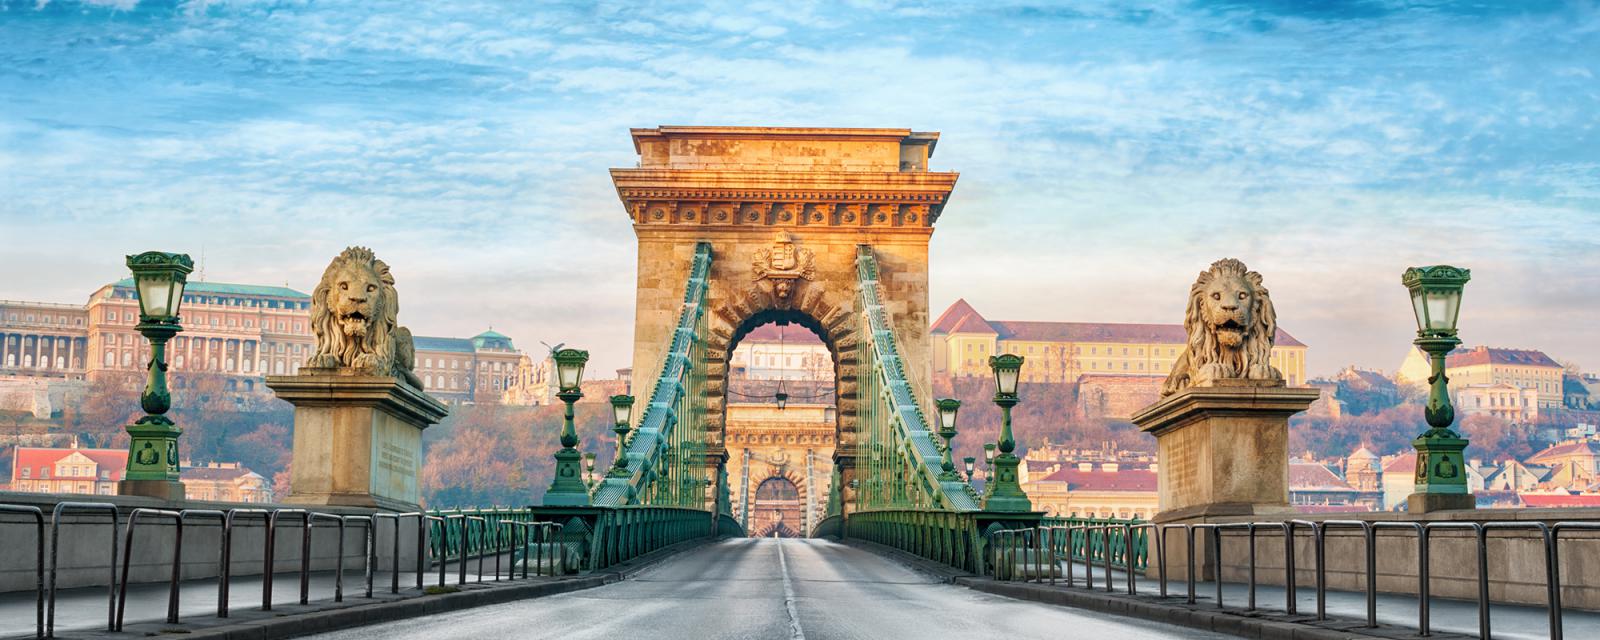 Tips voor je stedentrip naar Budapest 